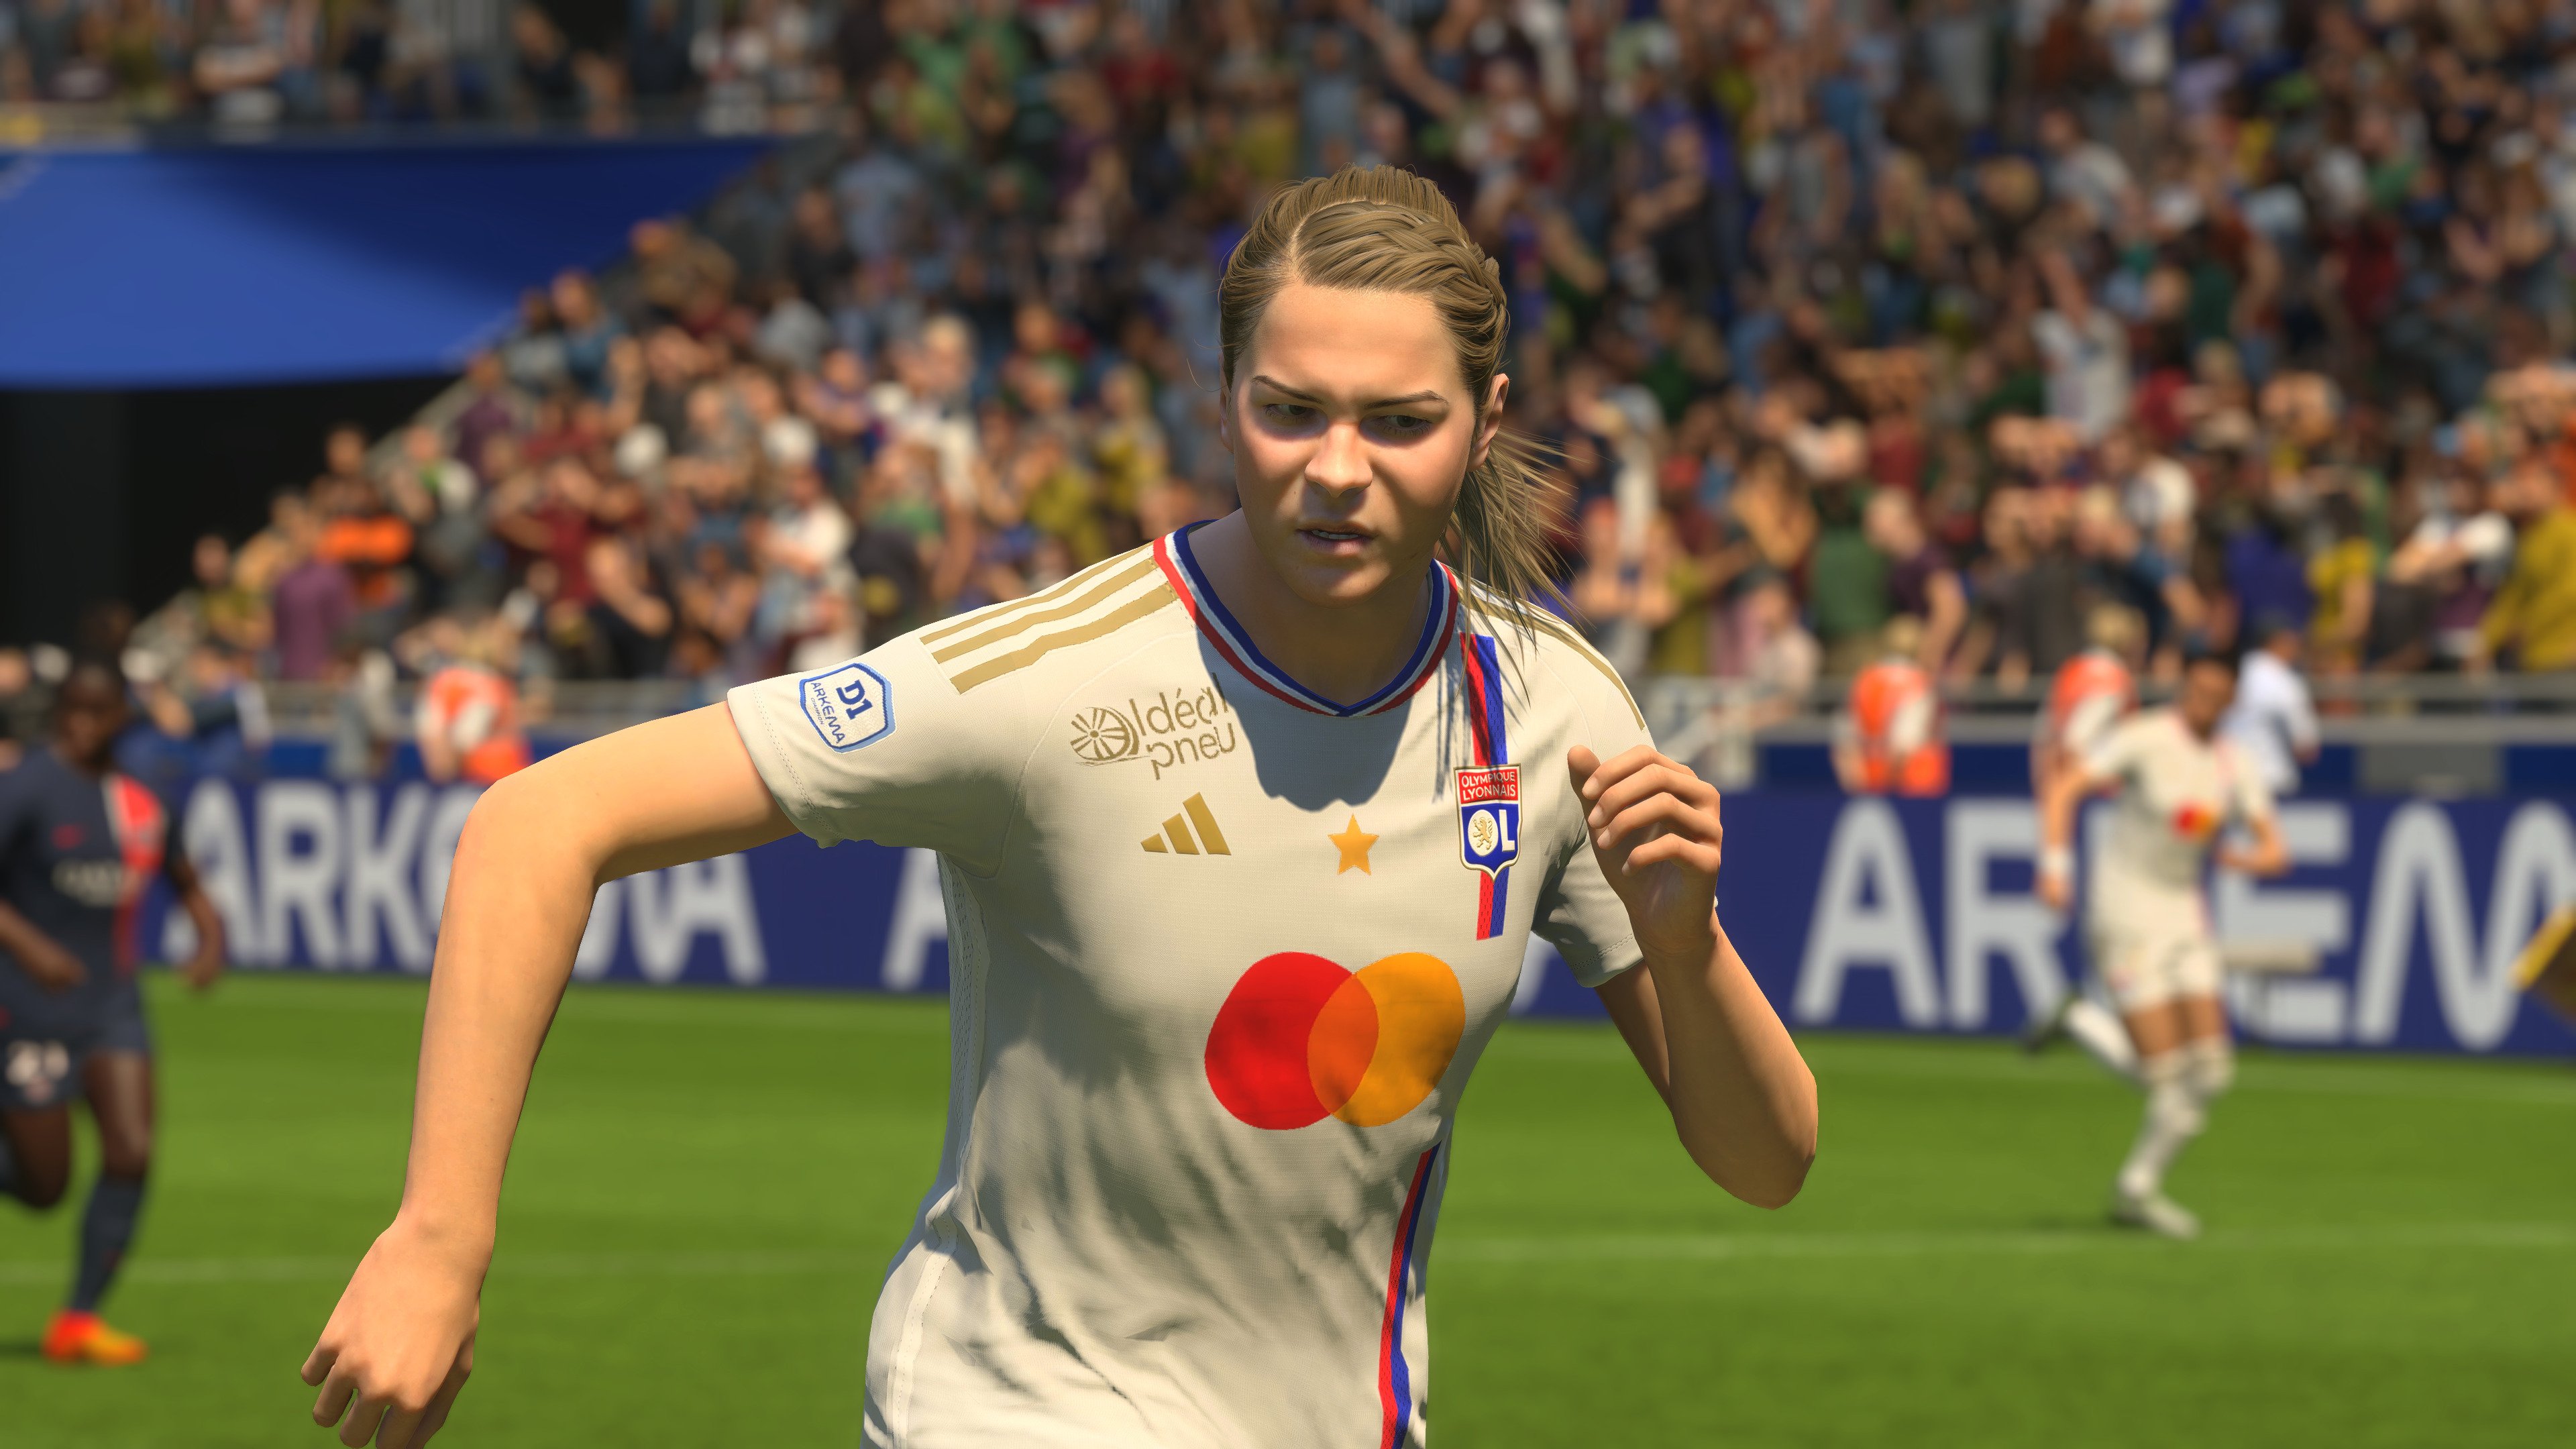 EA Sports FC 24 Has Been Revealed Alongside A Release Date